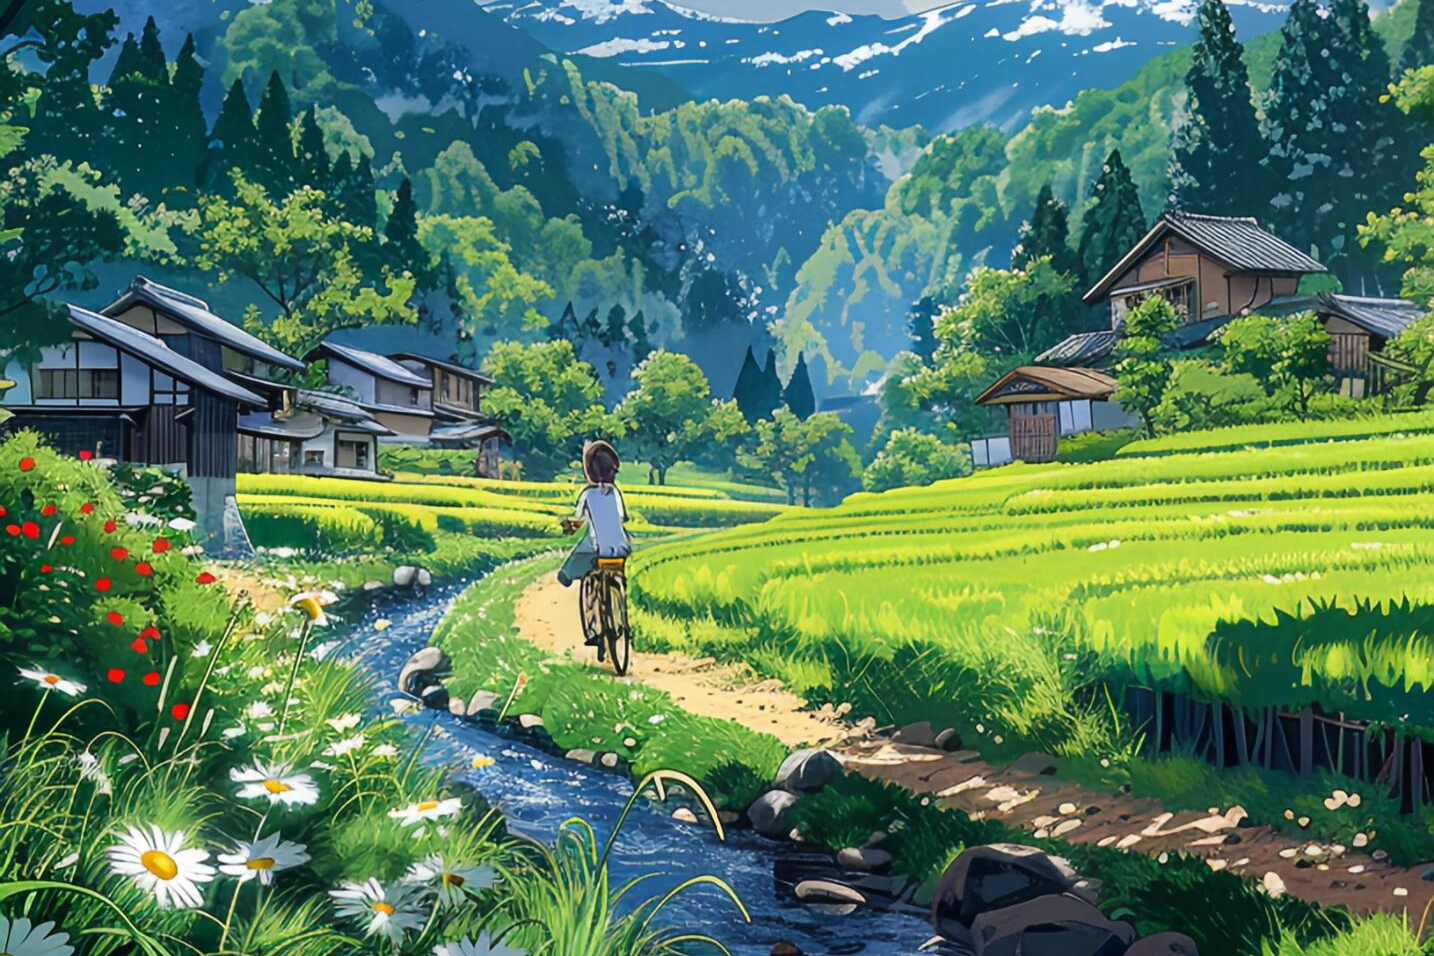 宫崎骏笔下的夏日乡愁:故乡的原风景